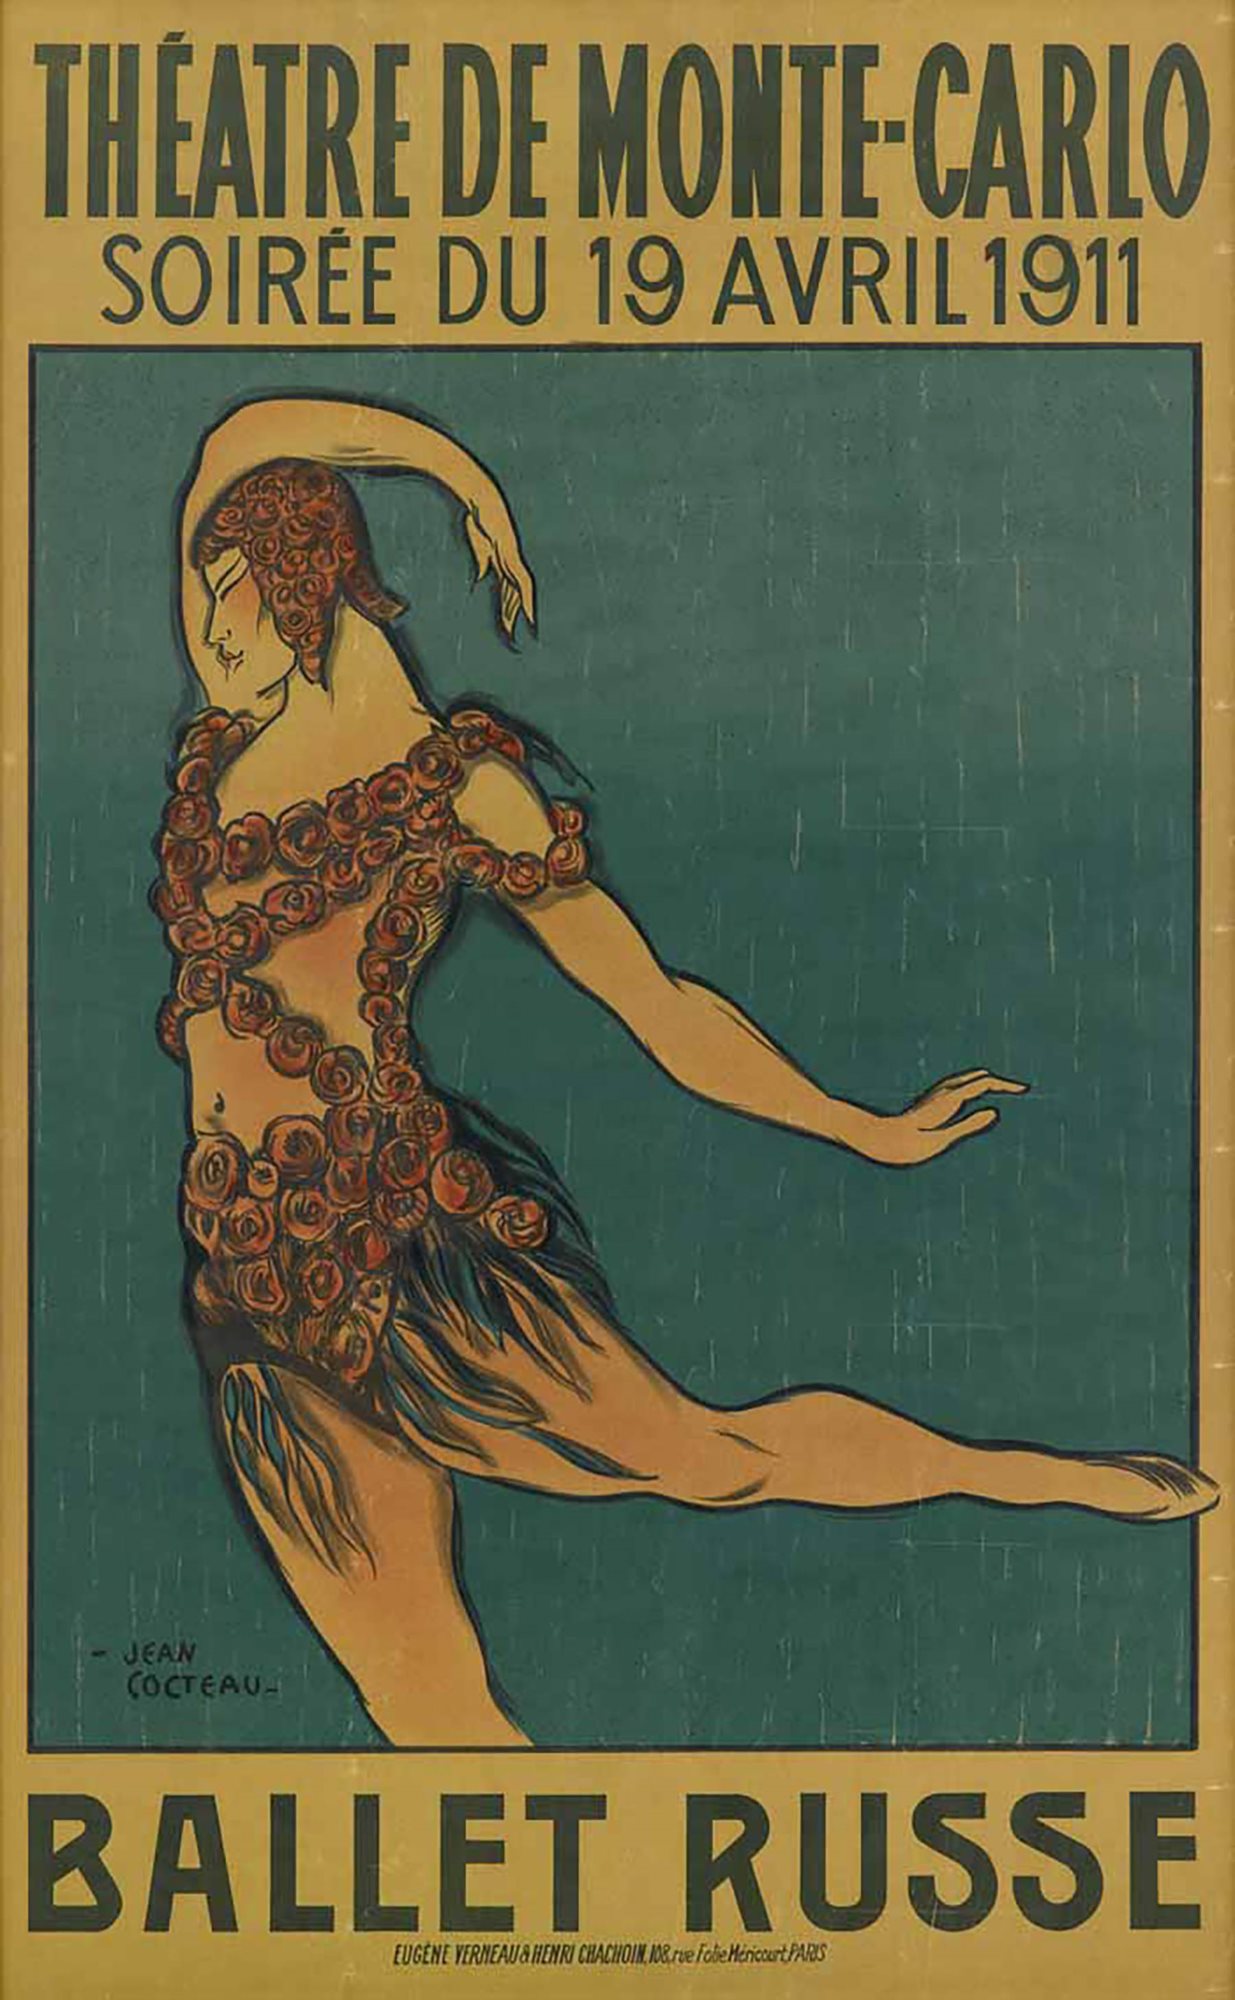 Cocteau, Jean. "Theatre De Monte Carlo, Soiree du 19 Avril 1911. Ballet Russe."